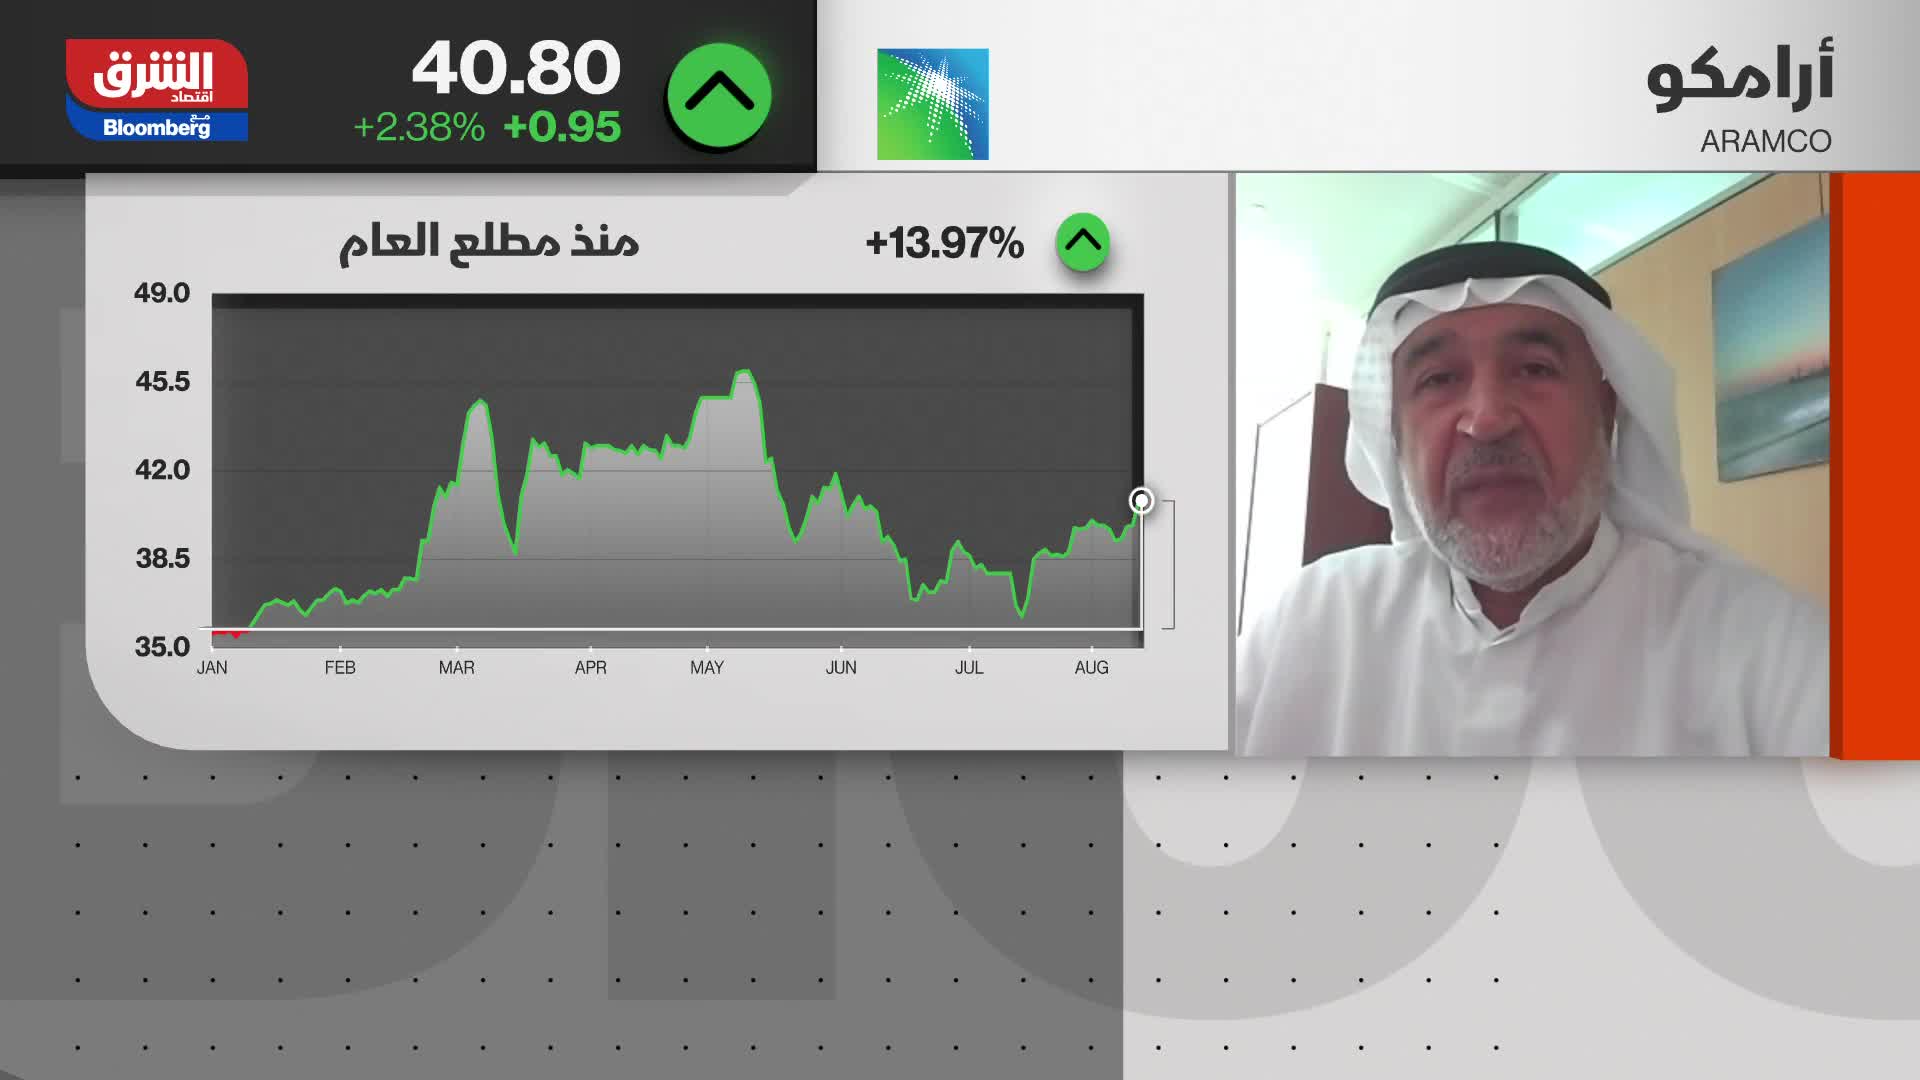 محمد الشطي : تحركات شركات النفط تجاه الطاقة المتجددة كبيرة جدا وستجد مردودها السنوات المقبلة